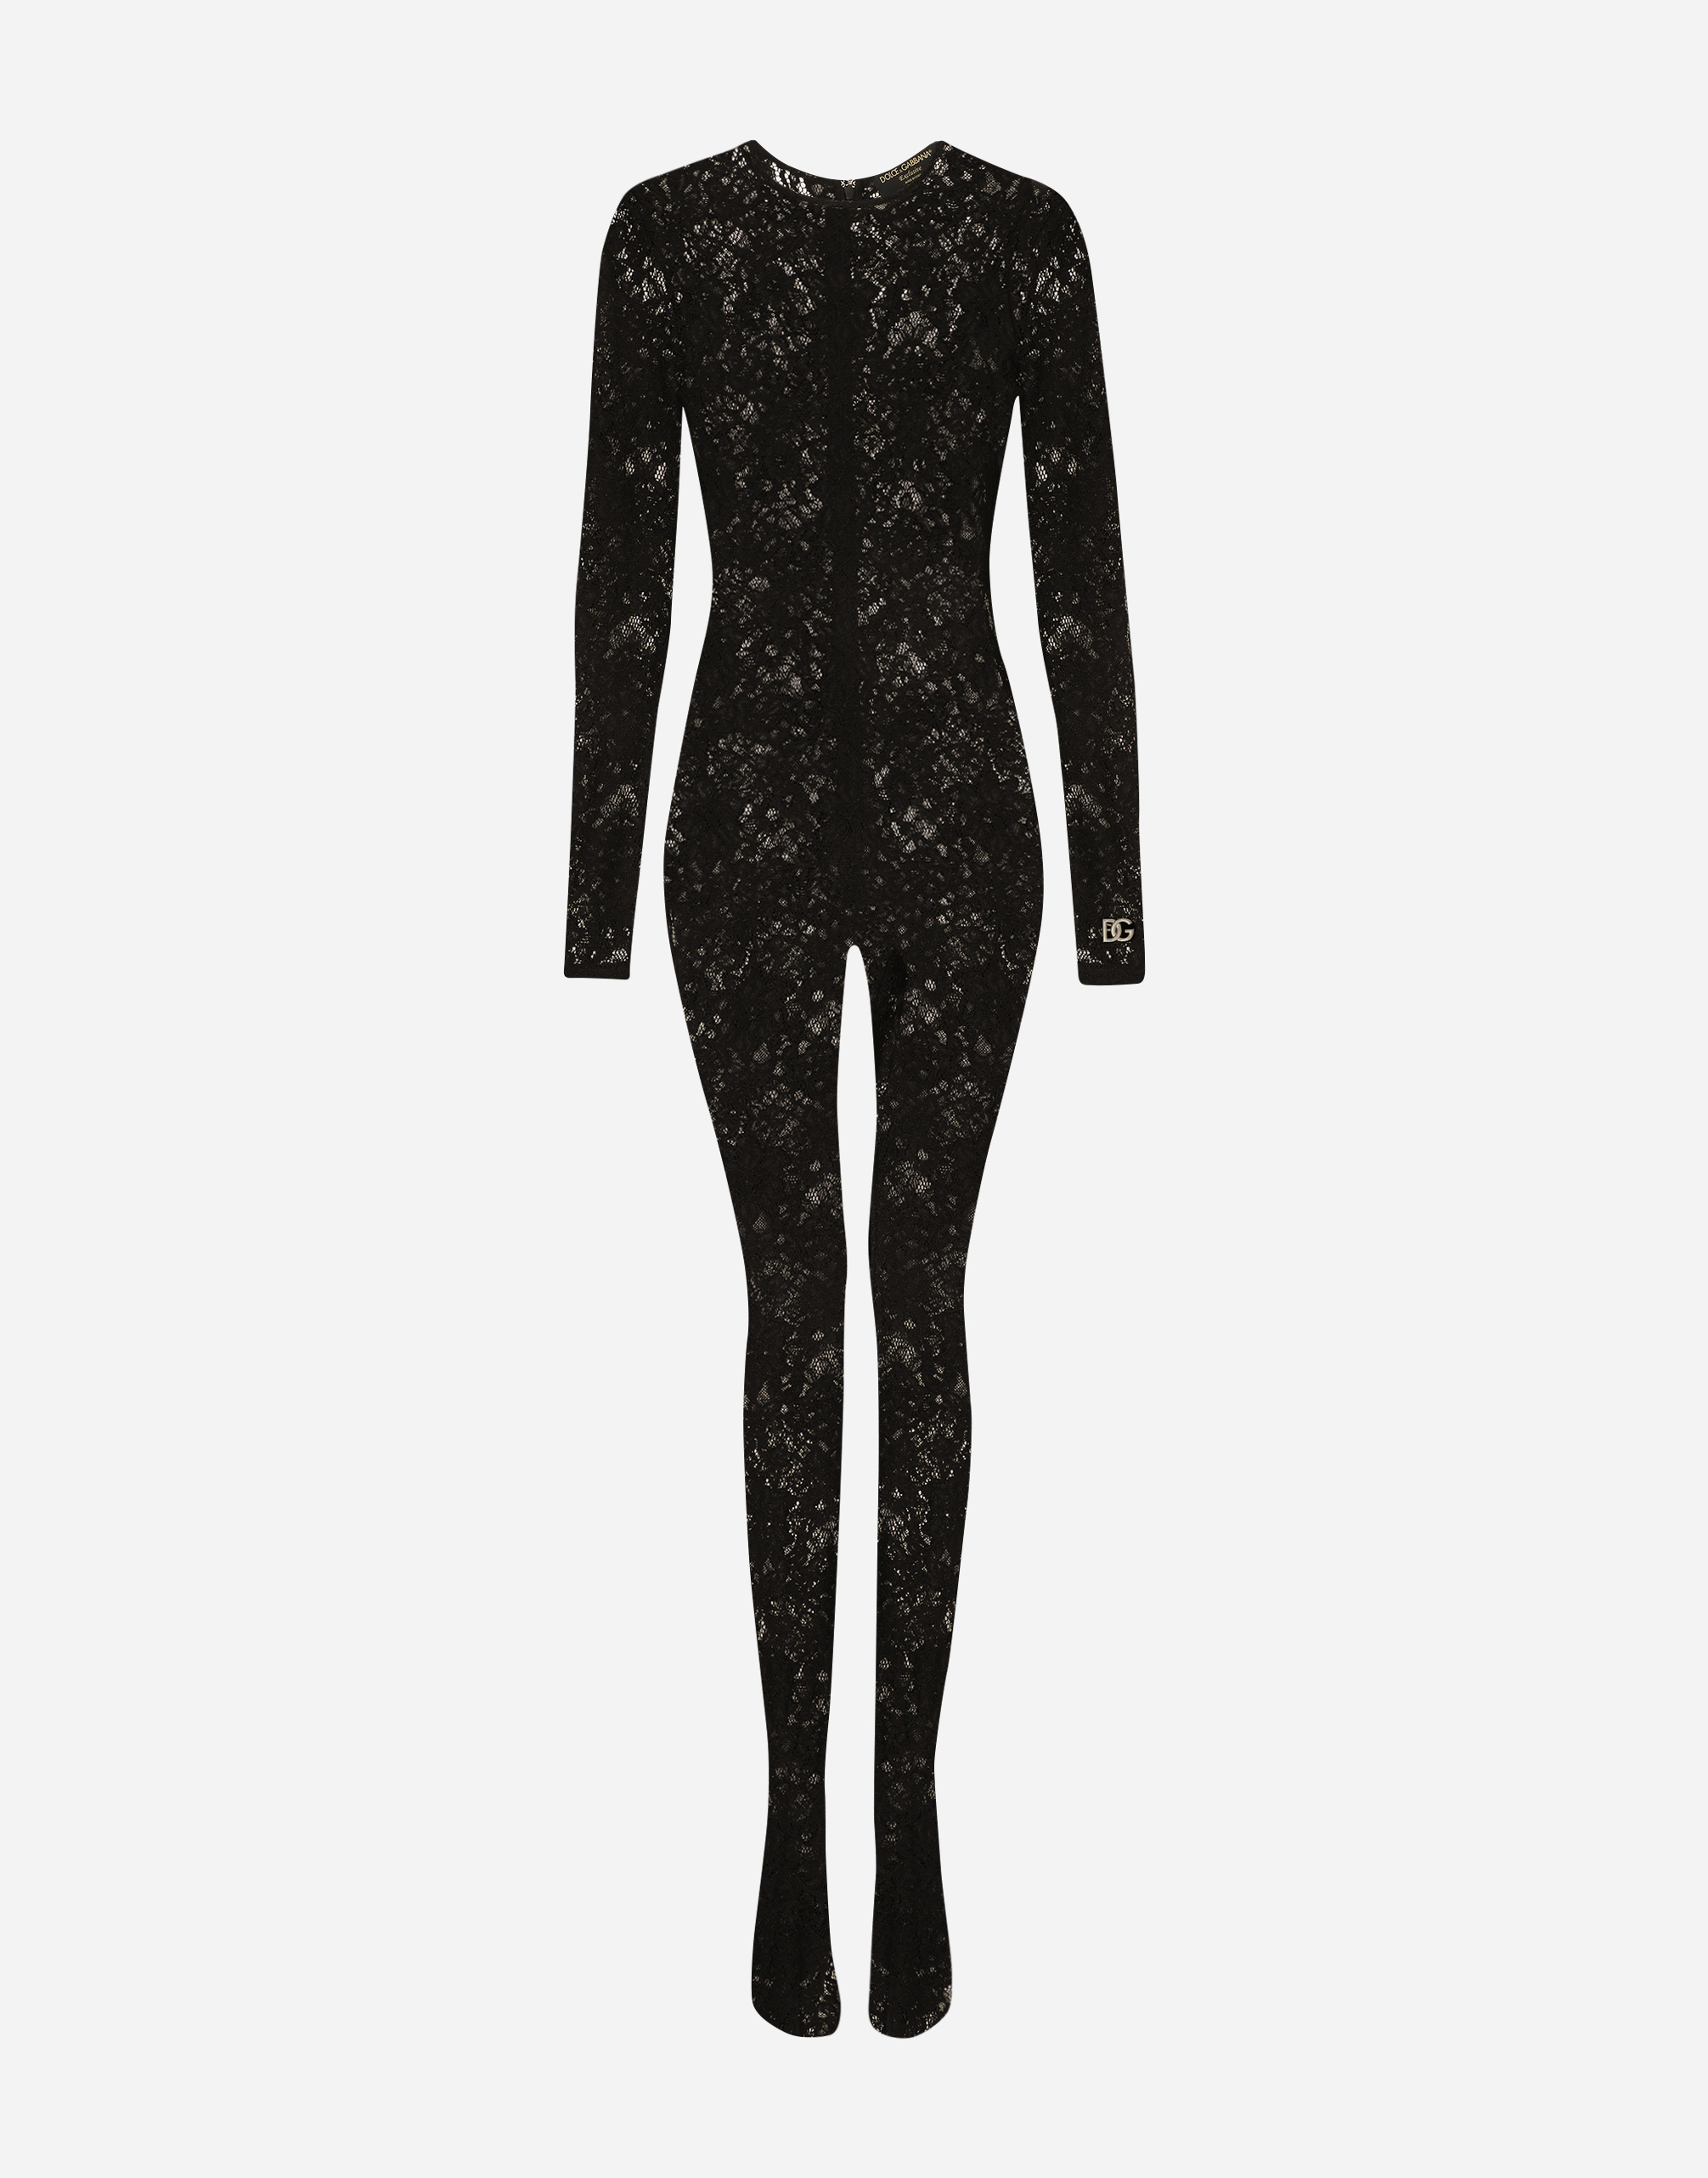 Lace jumpsuit in Black